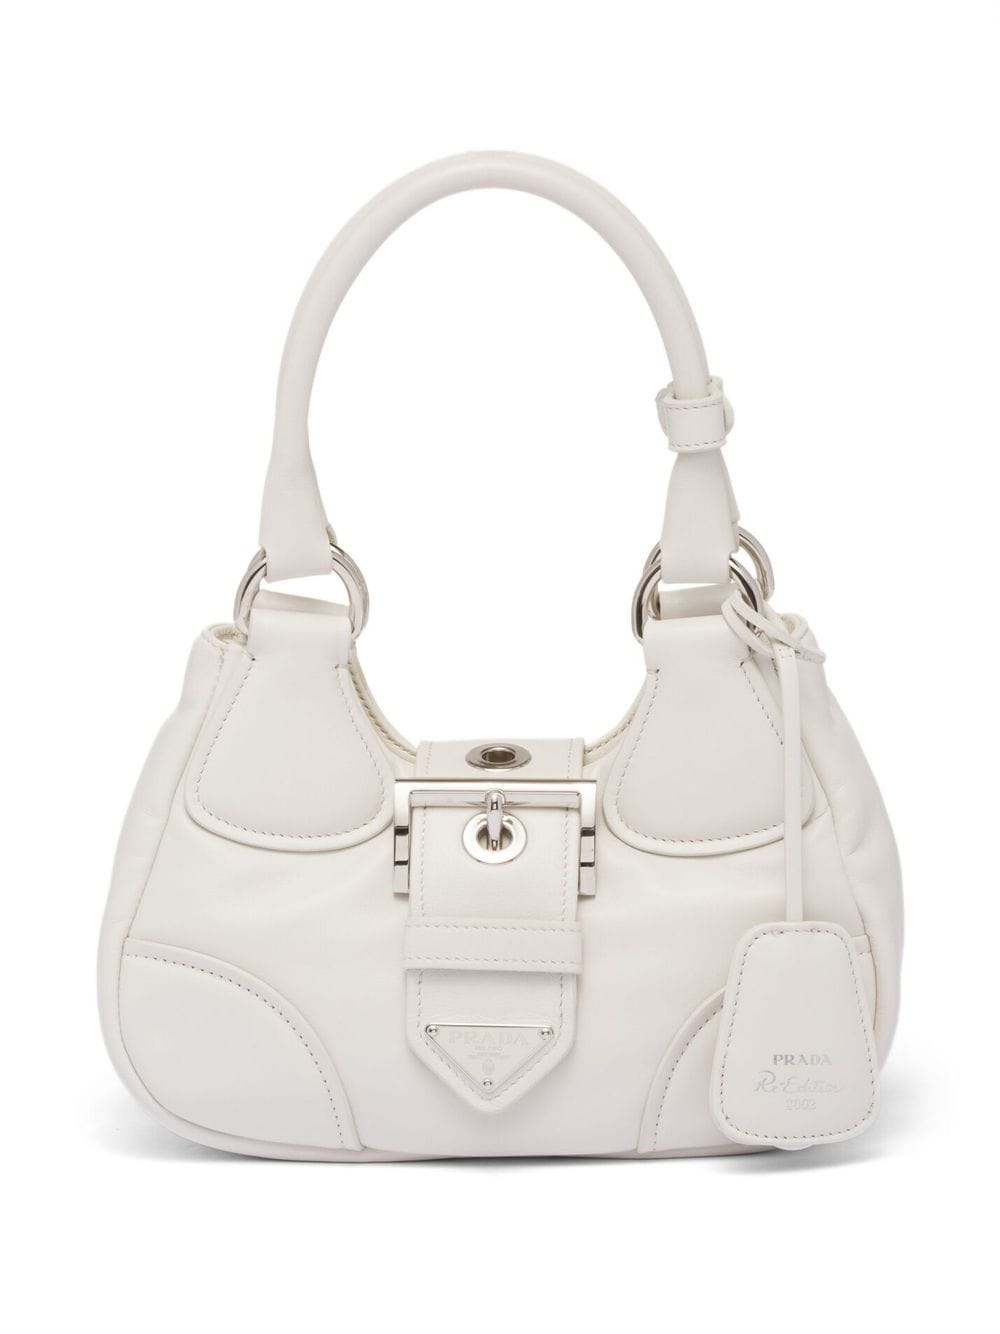 White Prada Bags: Shop up to −34%